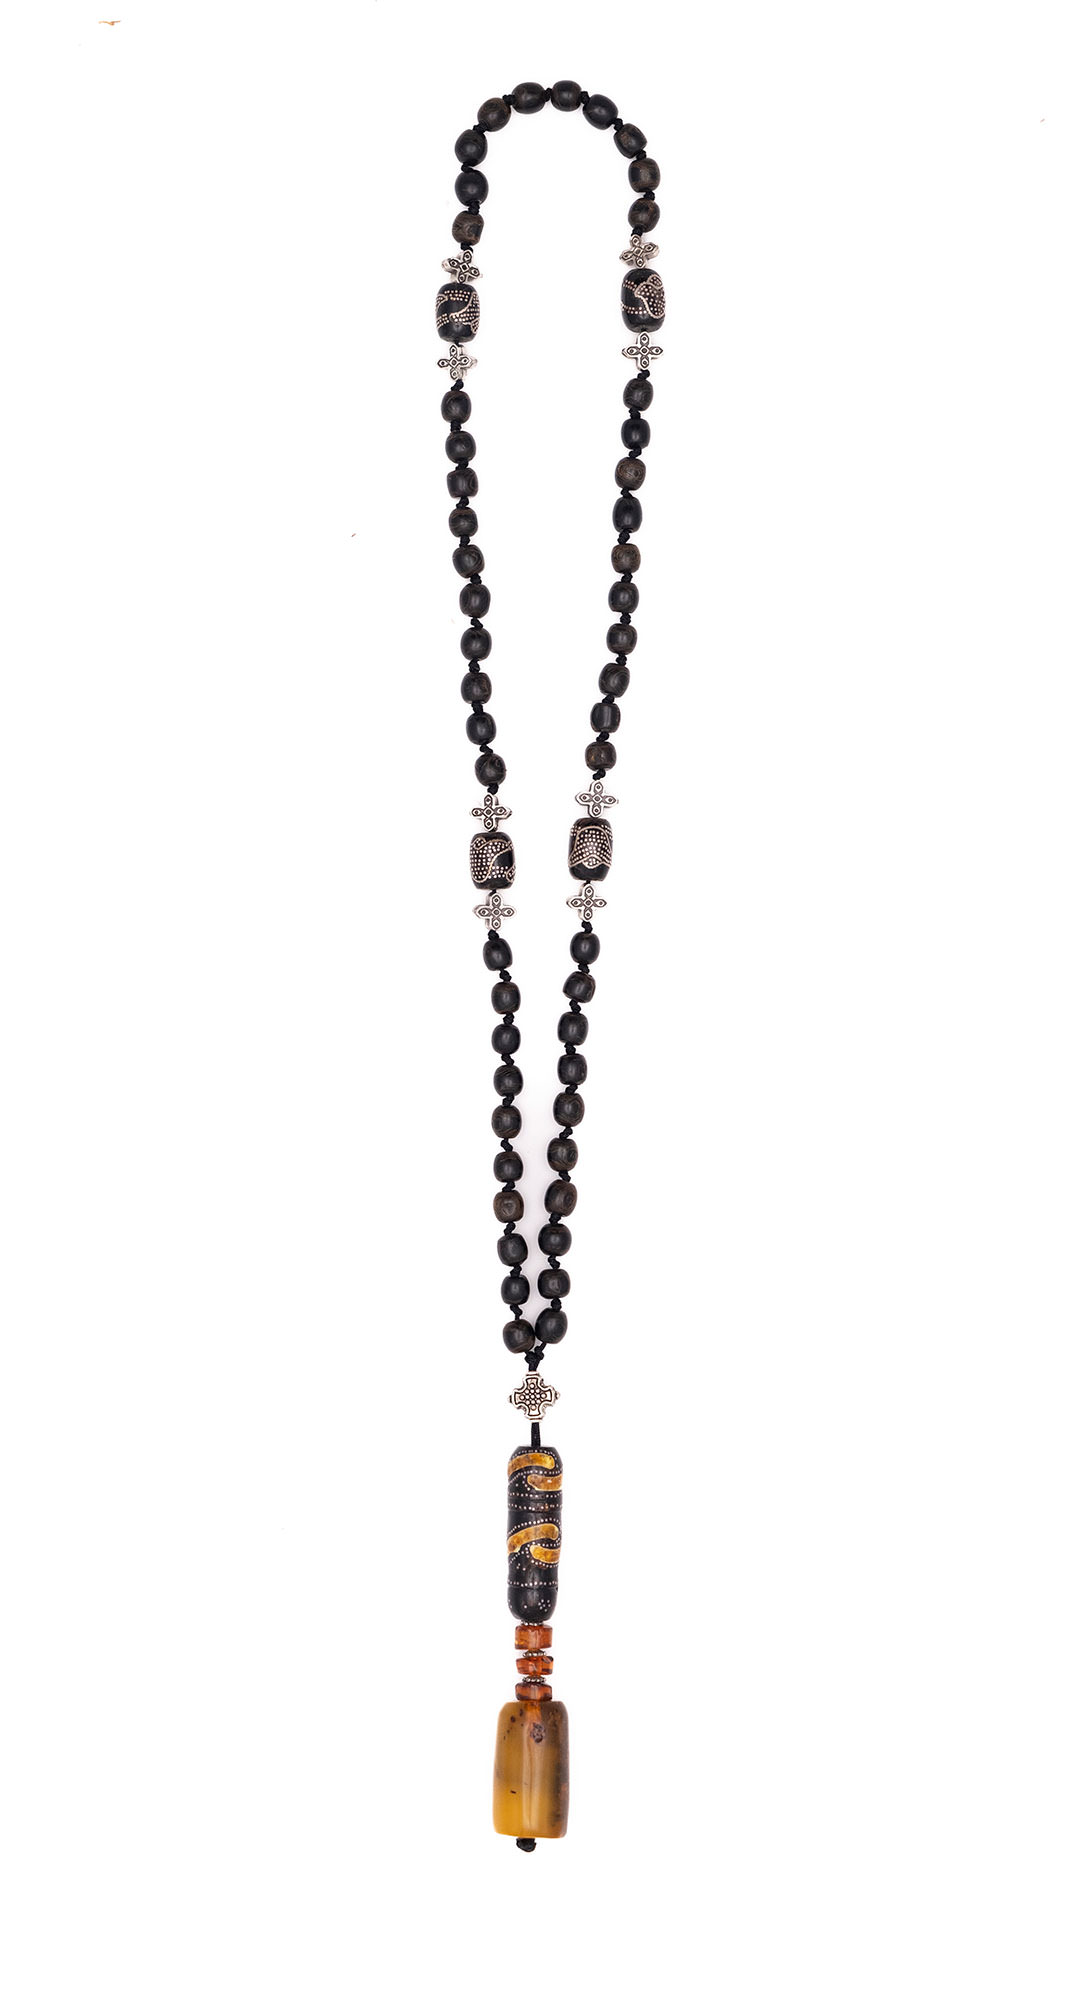 Καθολικό Προσευχητάρι (Ροζάριο) από Μαύρο Κοράλλι κοπής 1880-1900 (Γιούσουρι), Κεχριμπάρι Βαλτικής Θάλασσας - κοπής χειροποίητης, ασήμι και κασσίτερο.